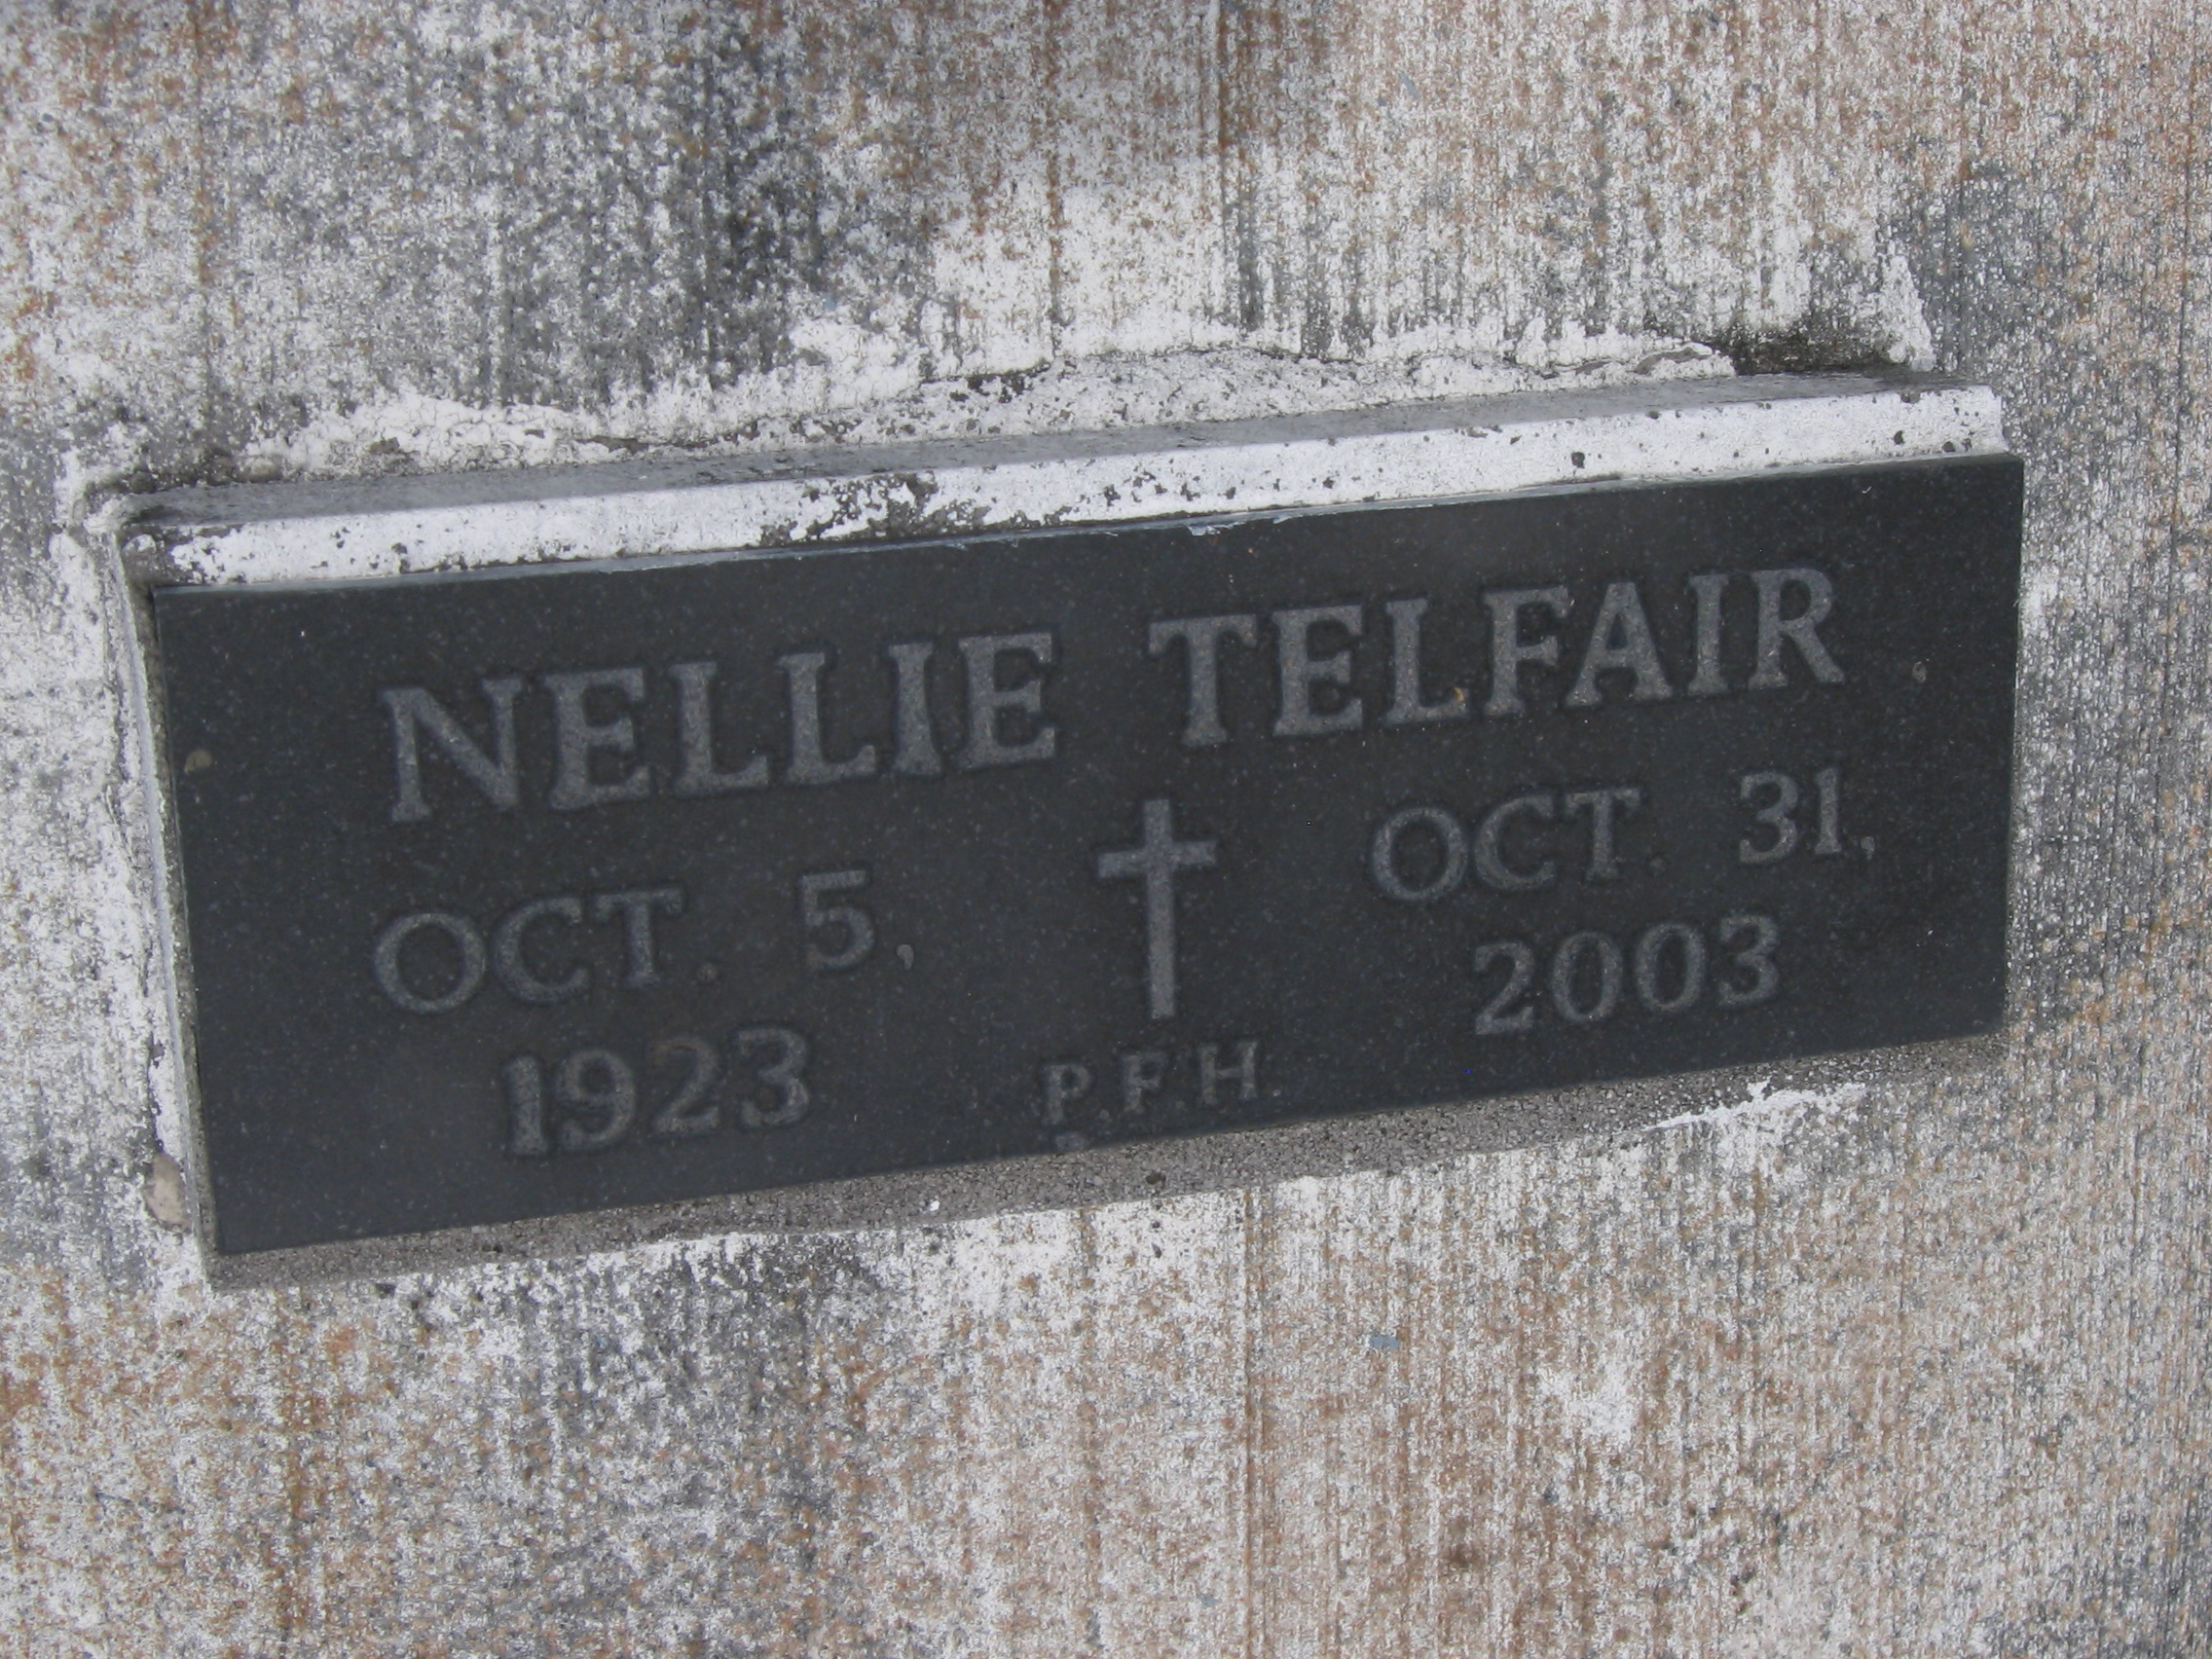 Nellie Telfair